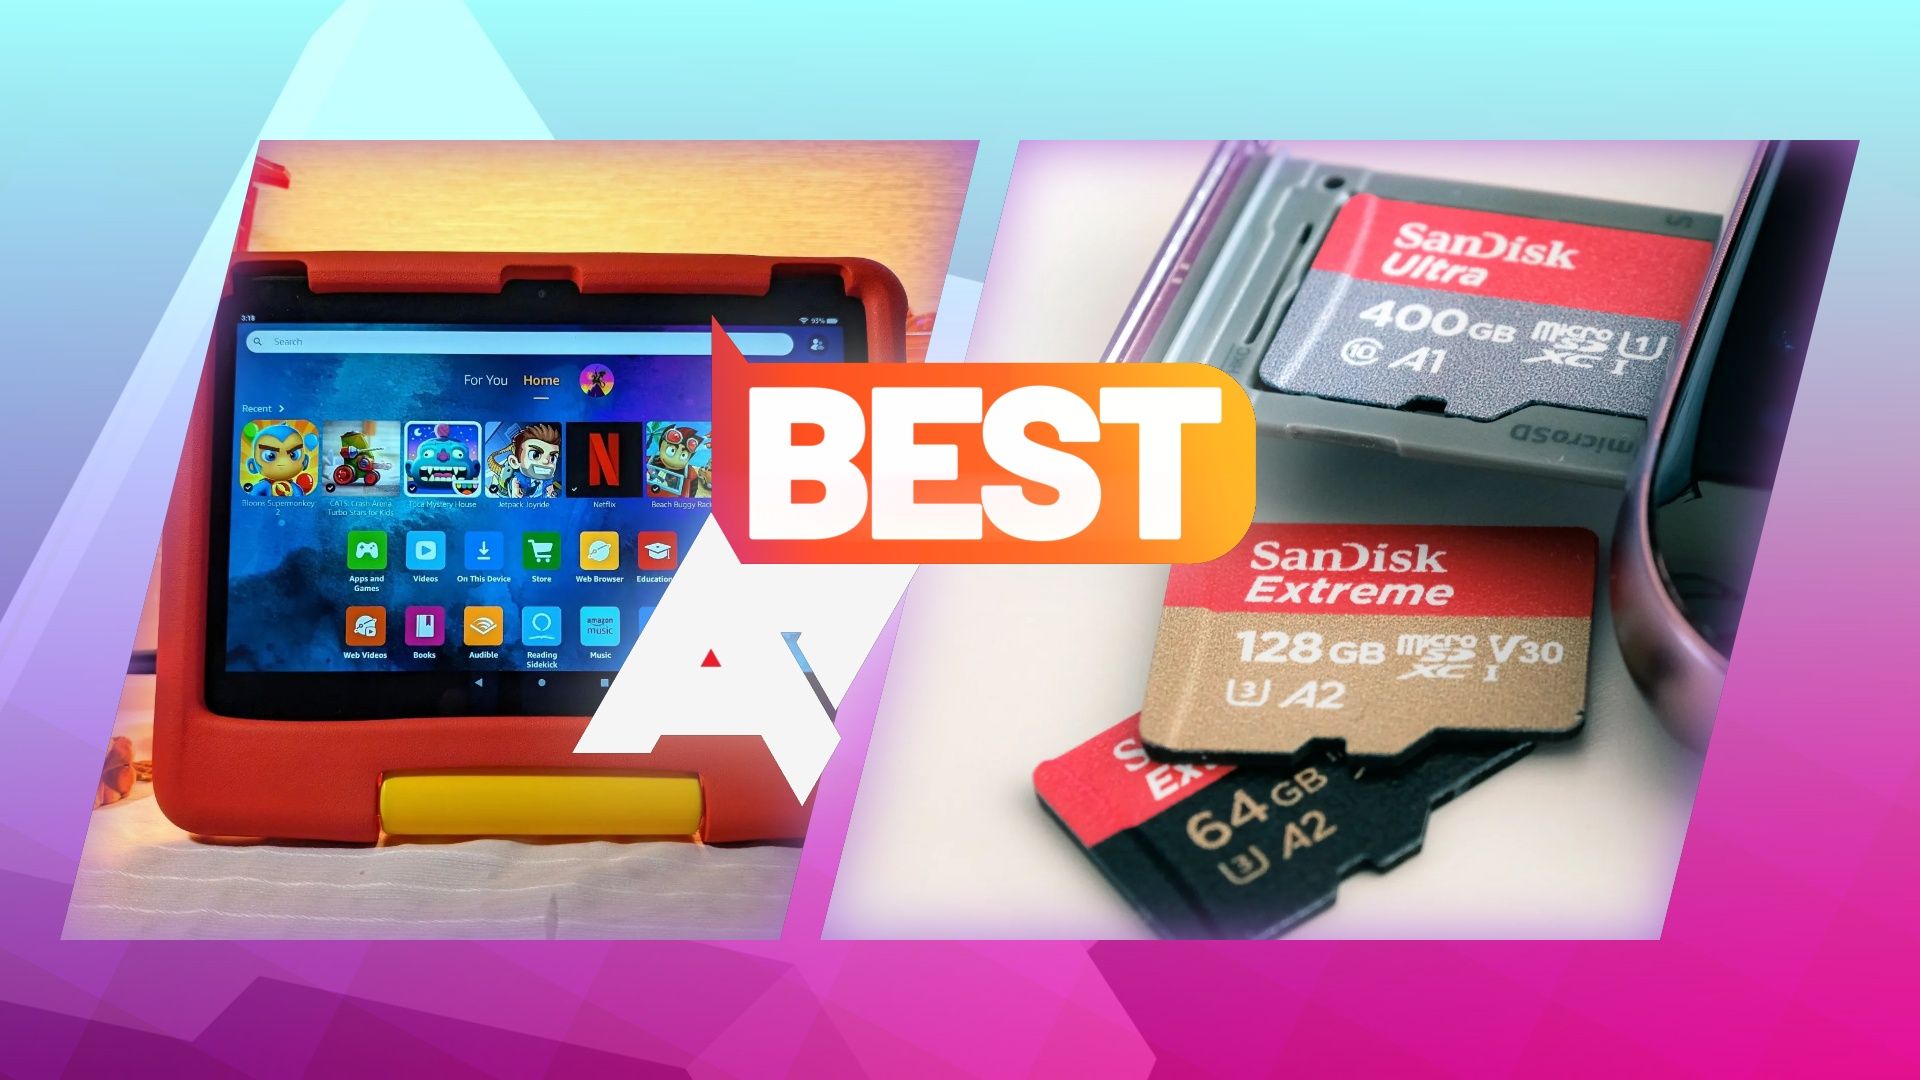 Fotos de um Amazon Fire Tablet for Kids e uma seleção de cartões microSD SanDisk, com o logotipo 'AP Best' na parte superior